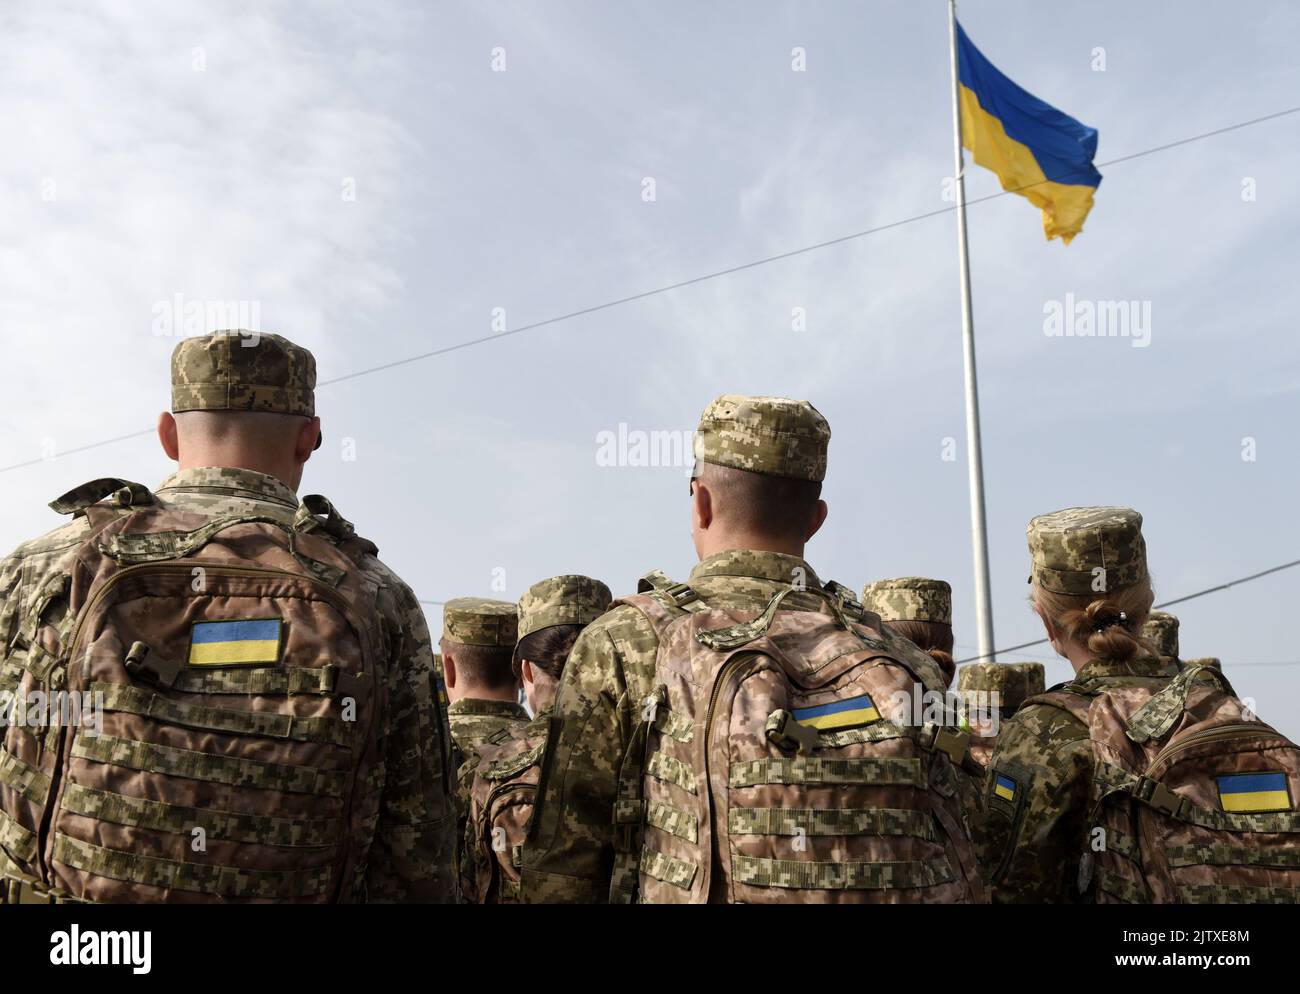 Fuerzas Armadas de Ucrania. Soldado ucraniano. Ucraniano en el ejército. Bandera ucraniana sobre uniforme militar. Foto de stock